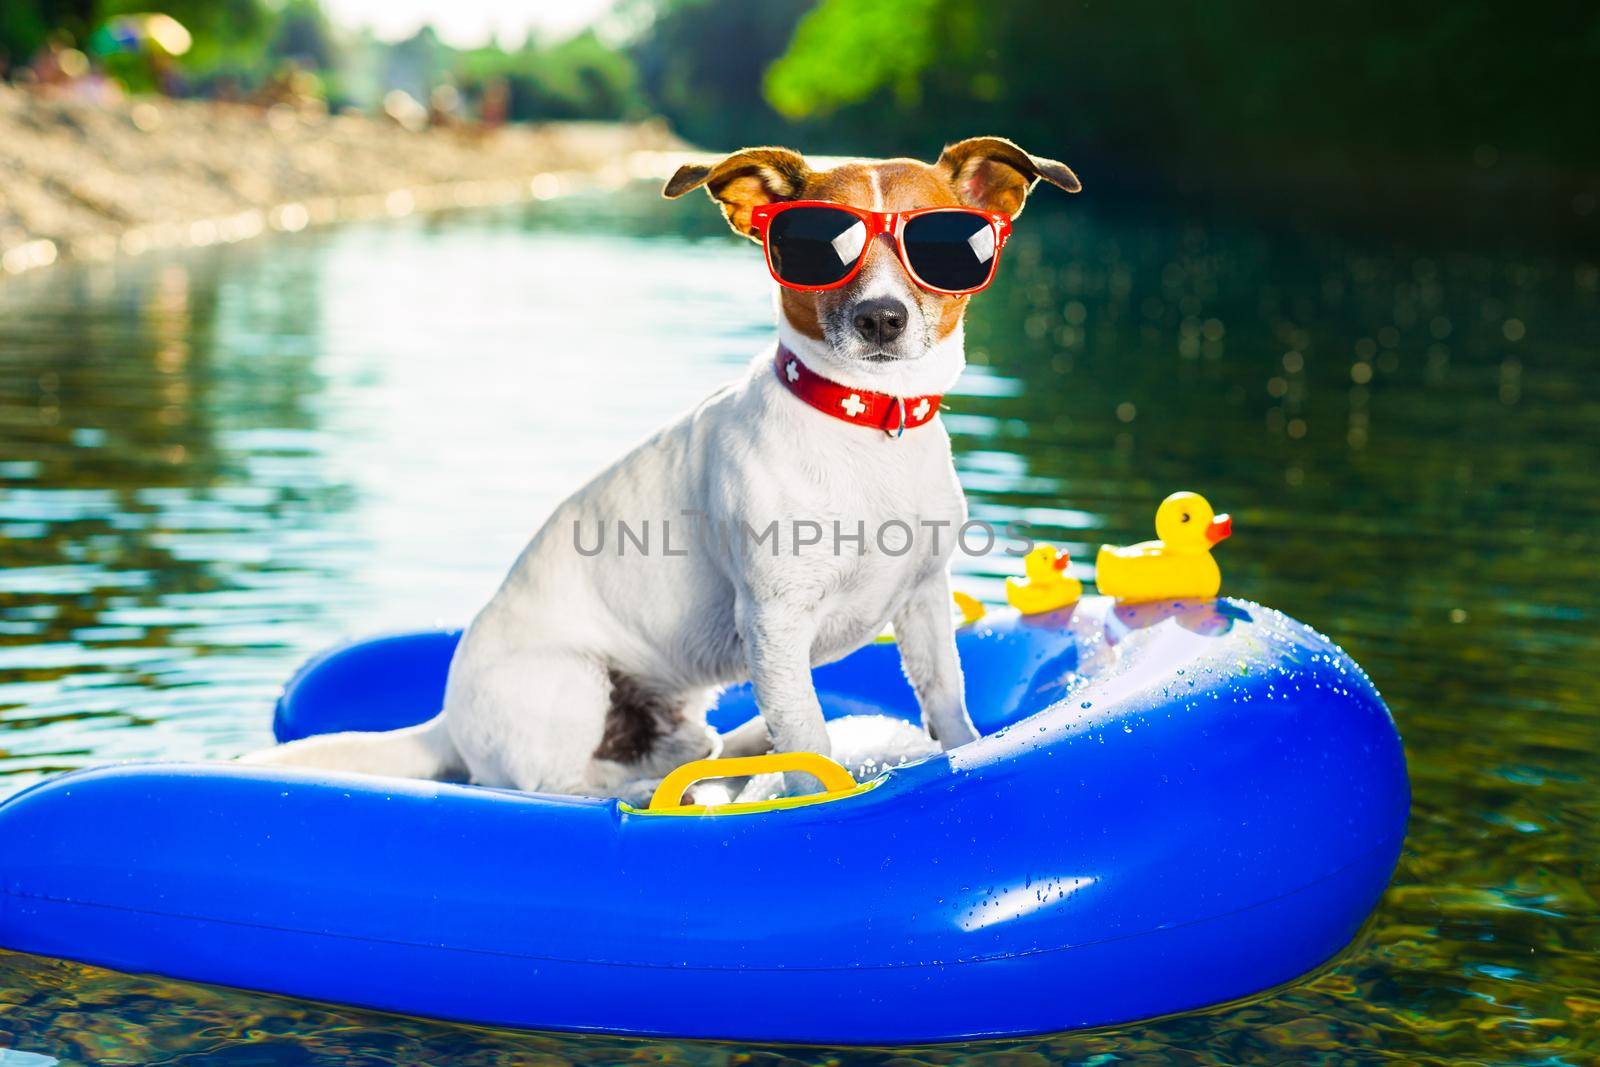 summer beach dog by Brosch